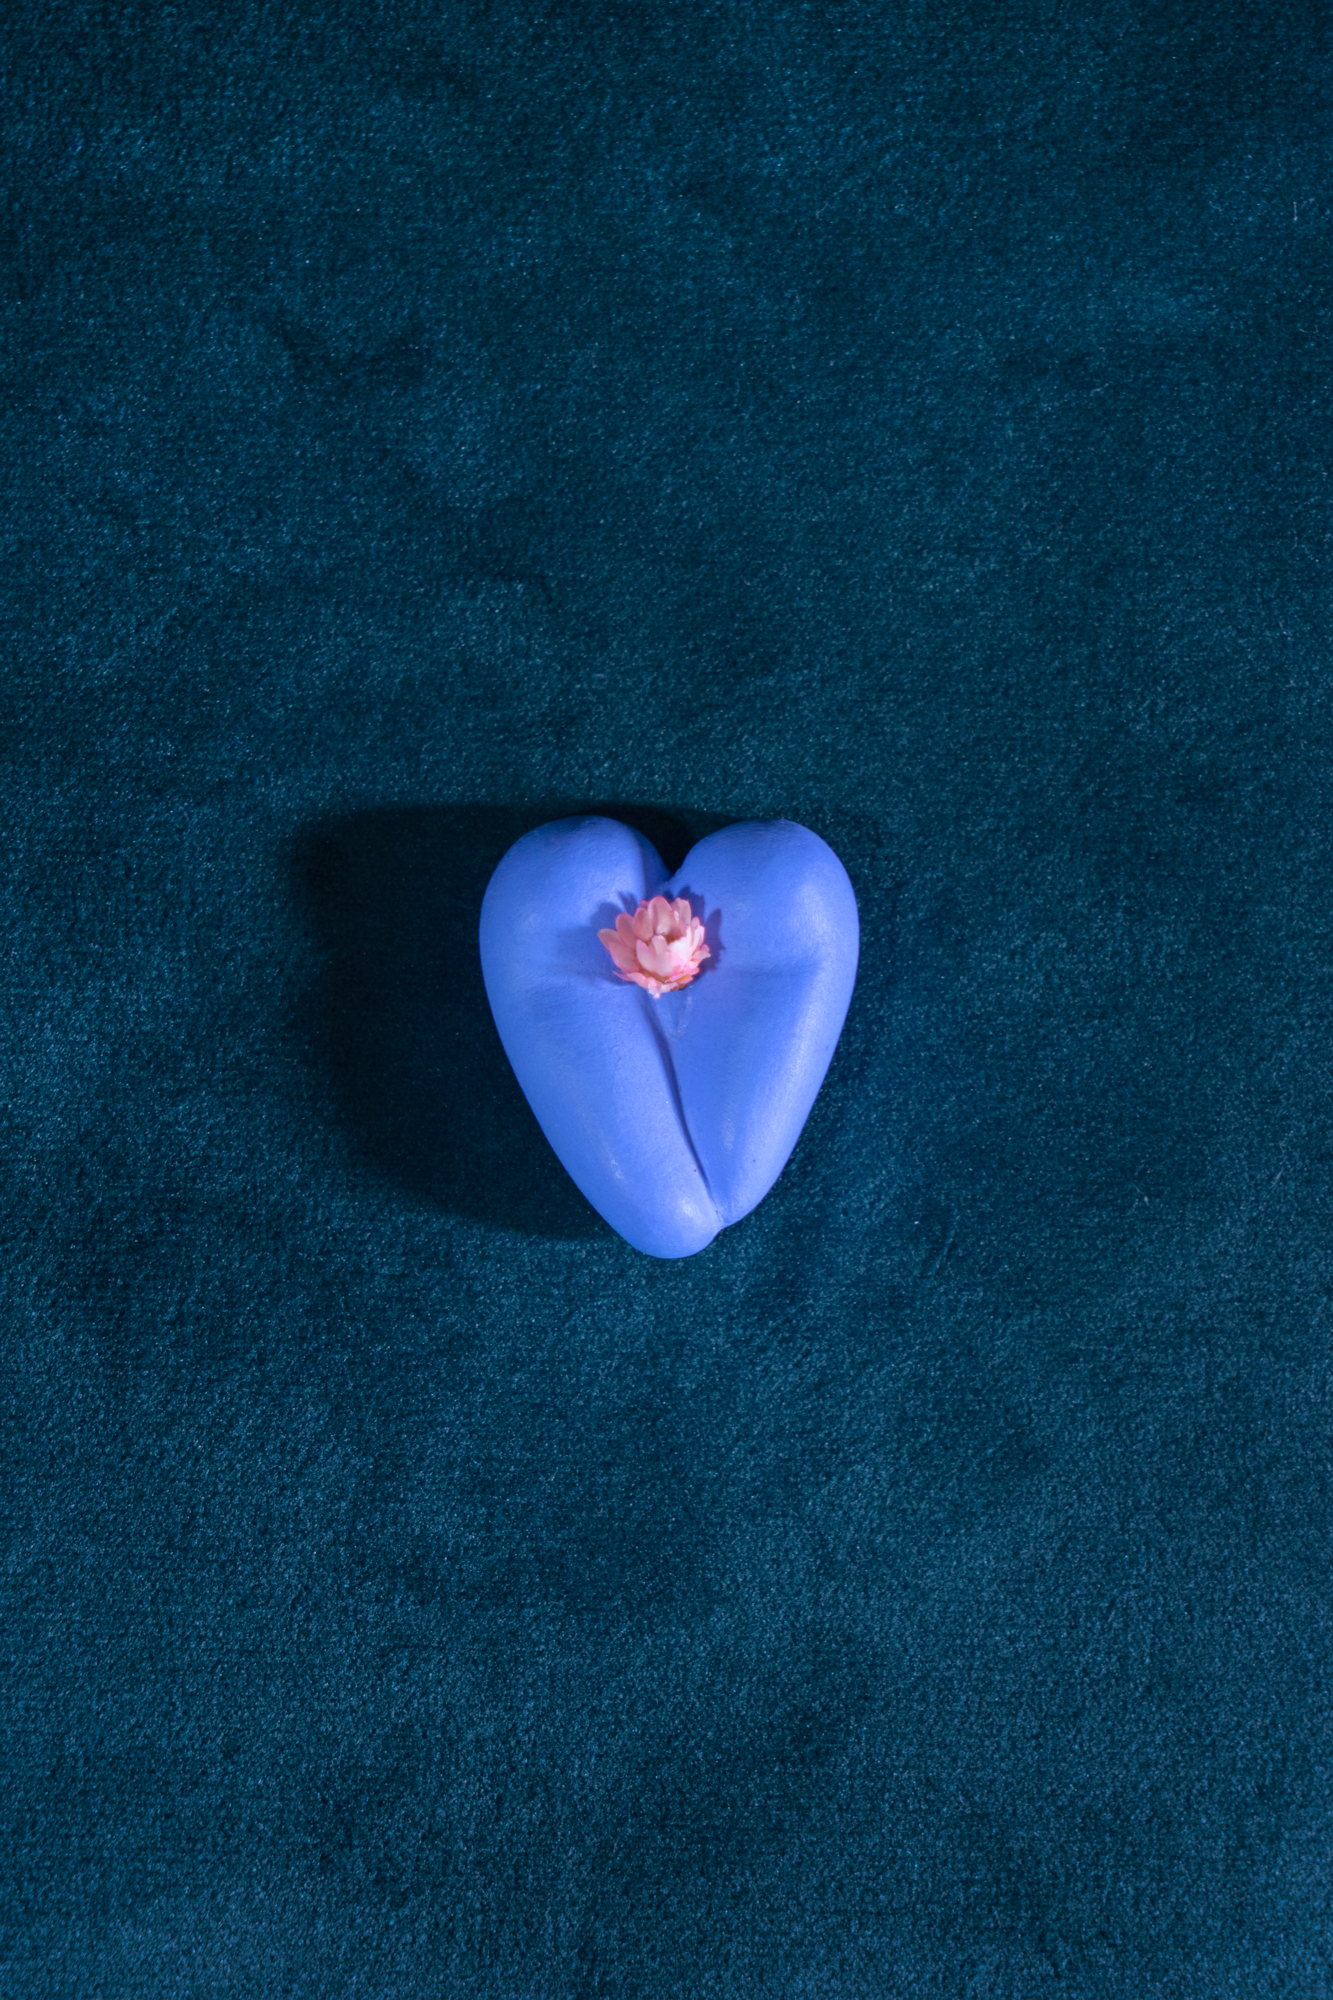 Coeur à nu de Maison Tessier sirène, fesses en forme de coeur avec petites fleurs séchées, sur tissus velour émeraude